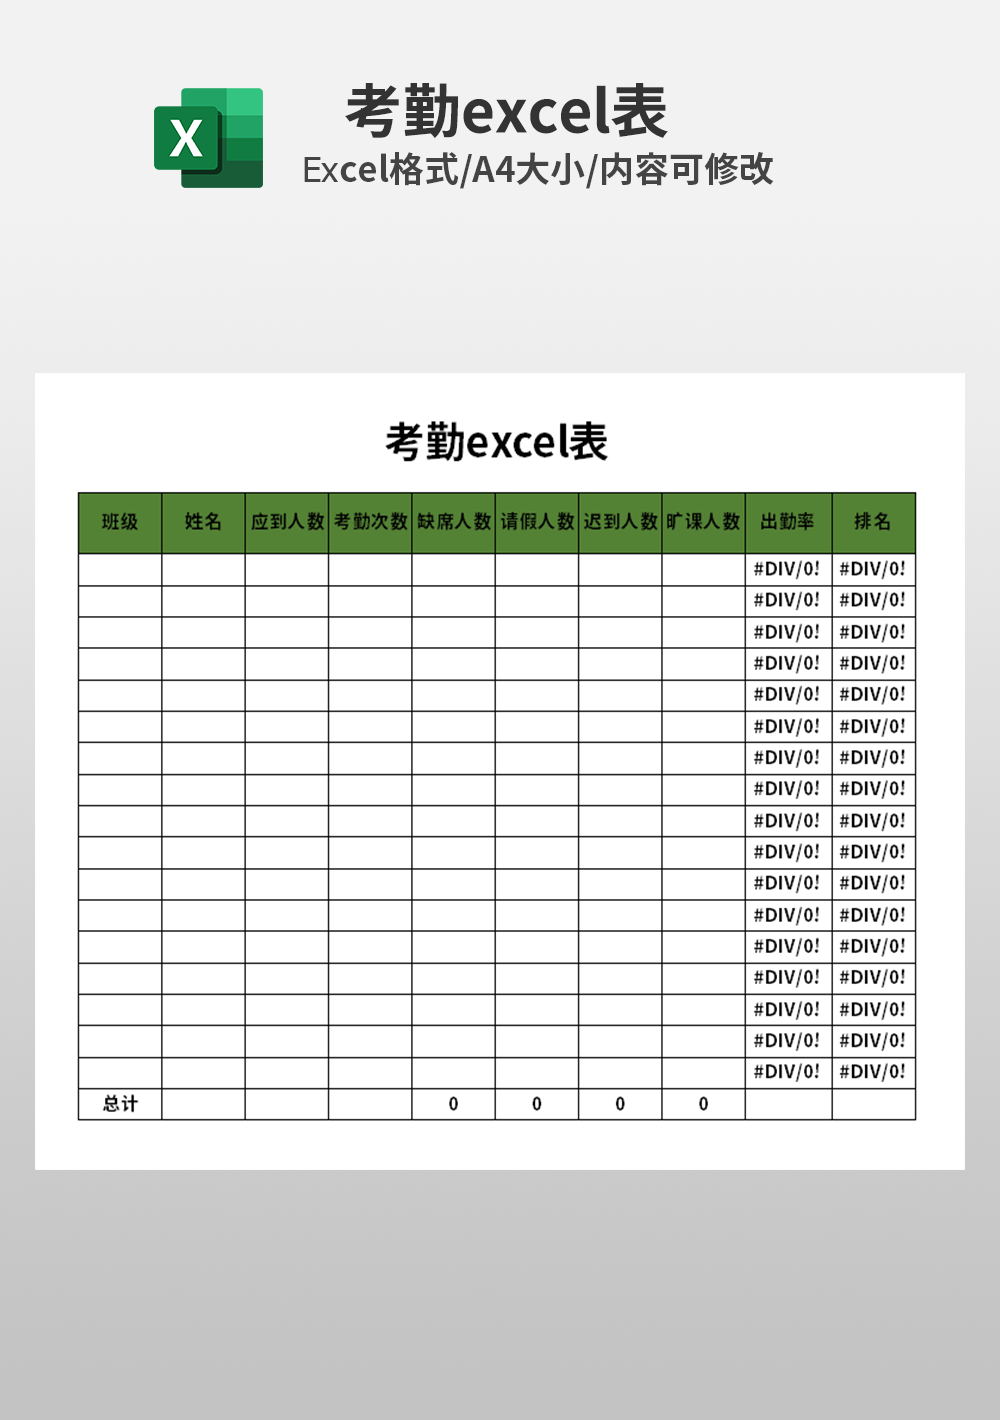 行政部表格排班表Excel模板